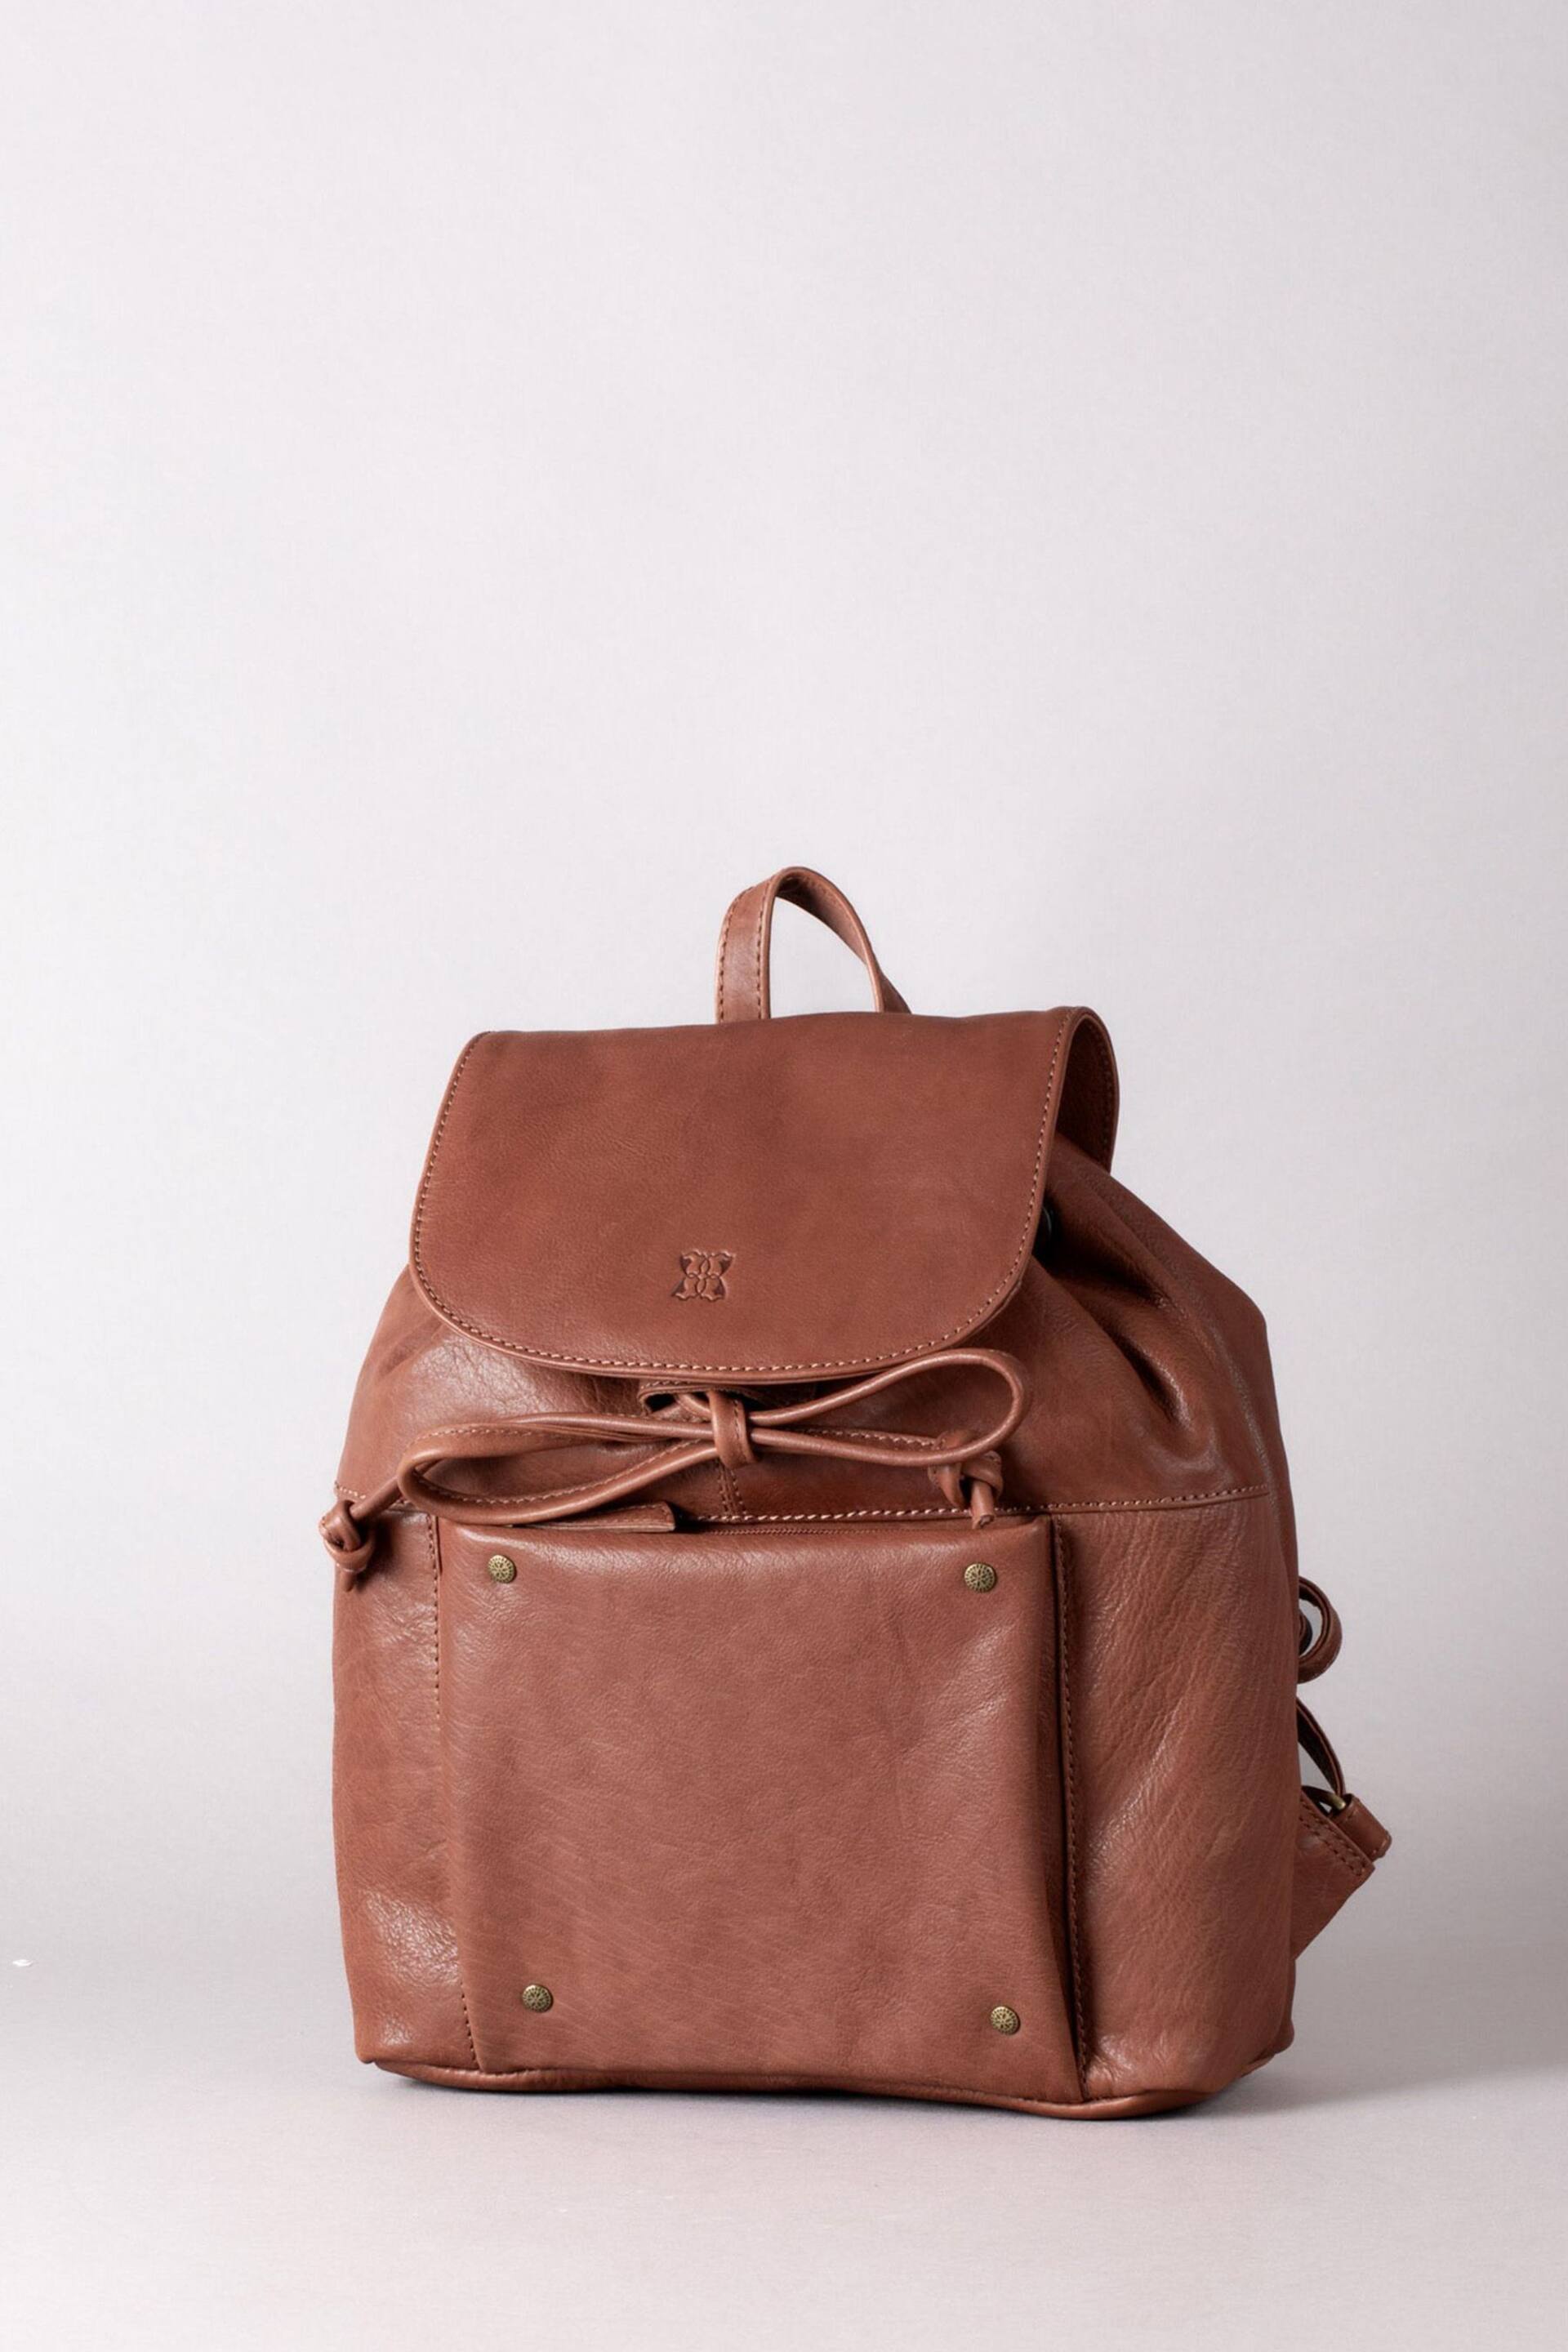 Lakeland Leather Harstone Leather  Backpack - Image 1 of 7